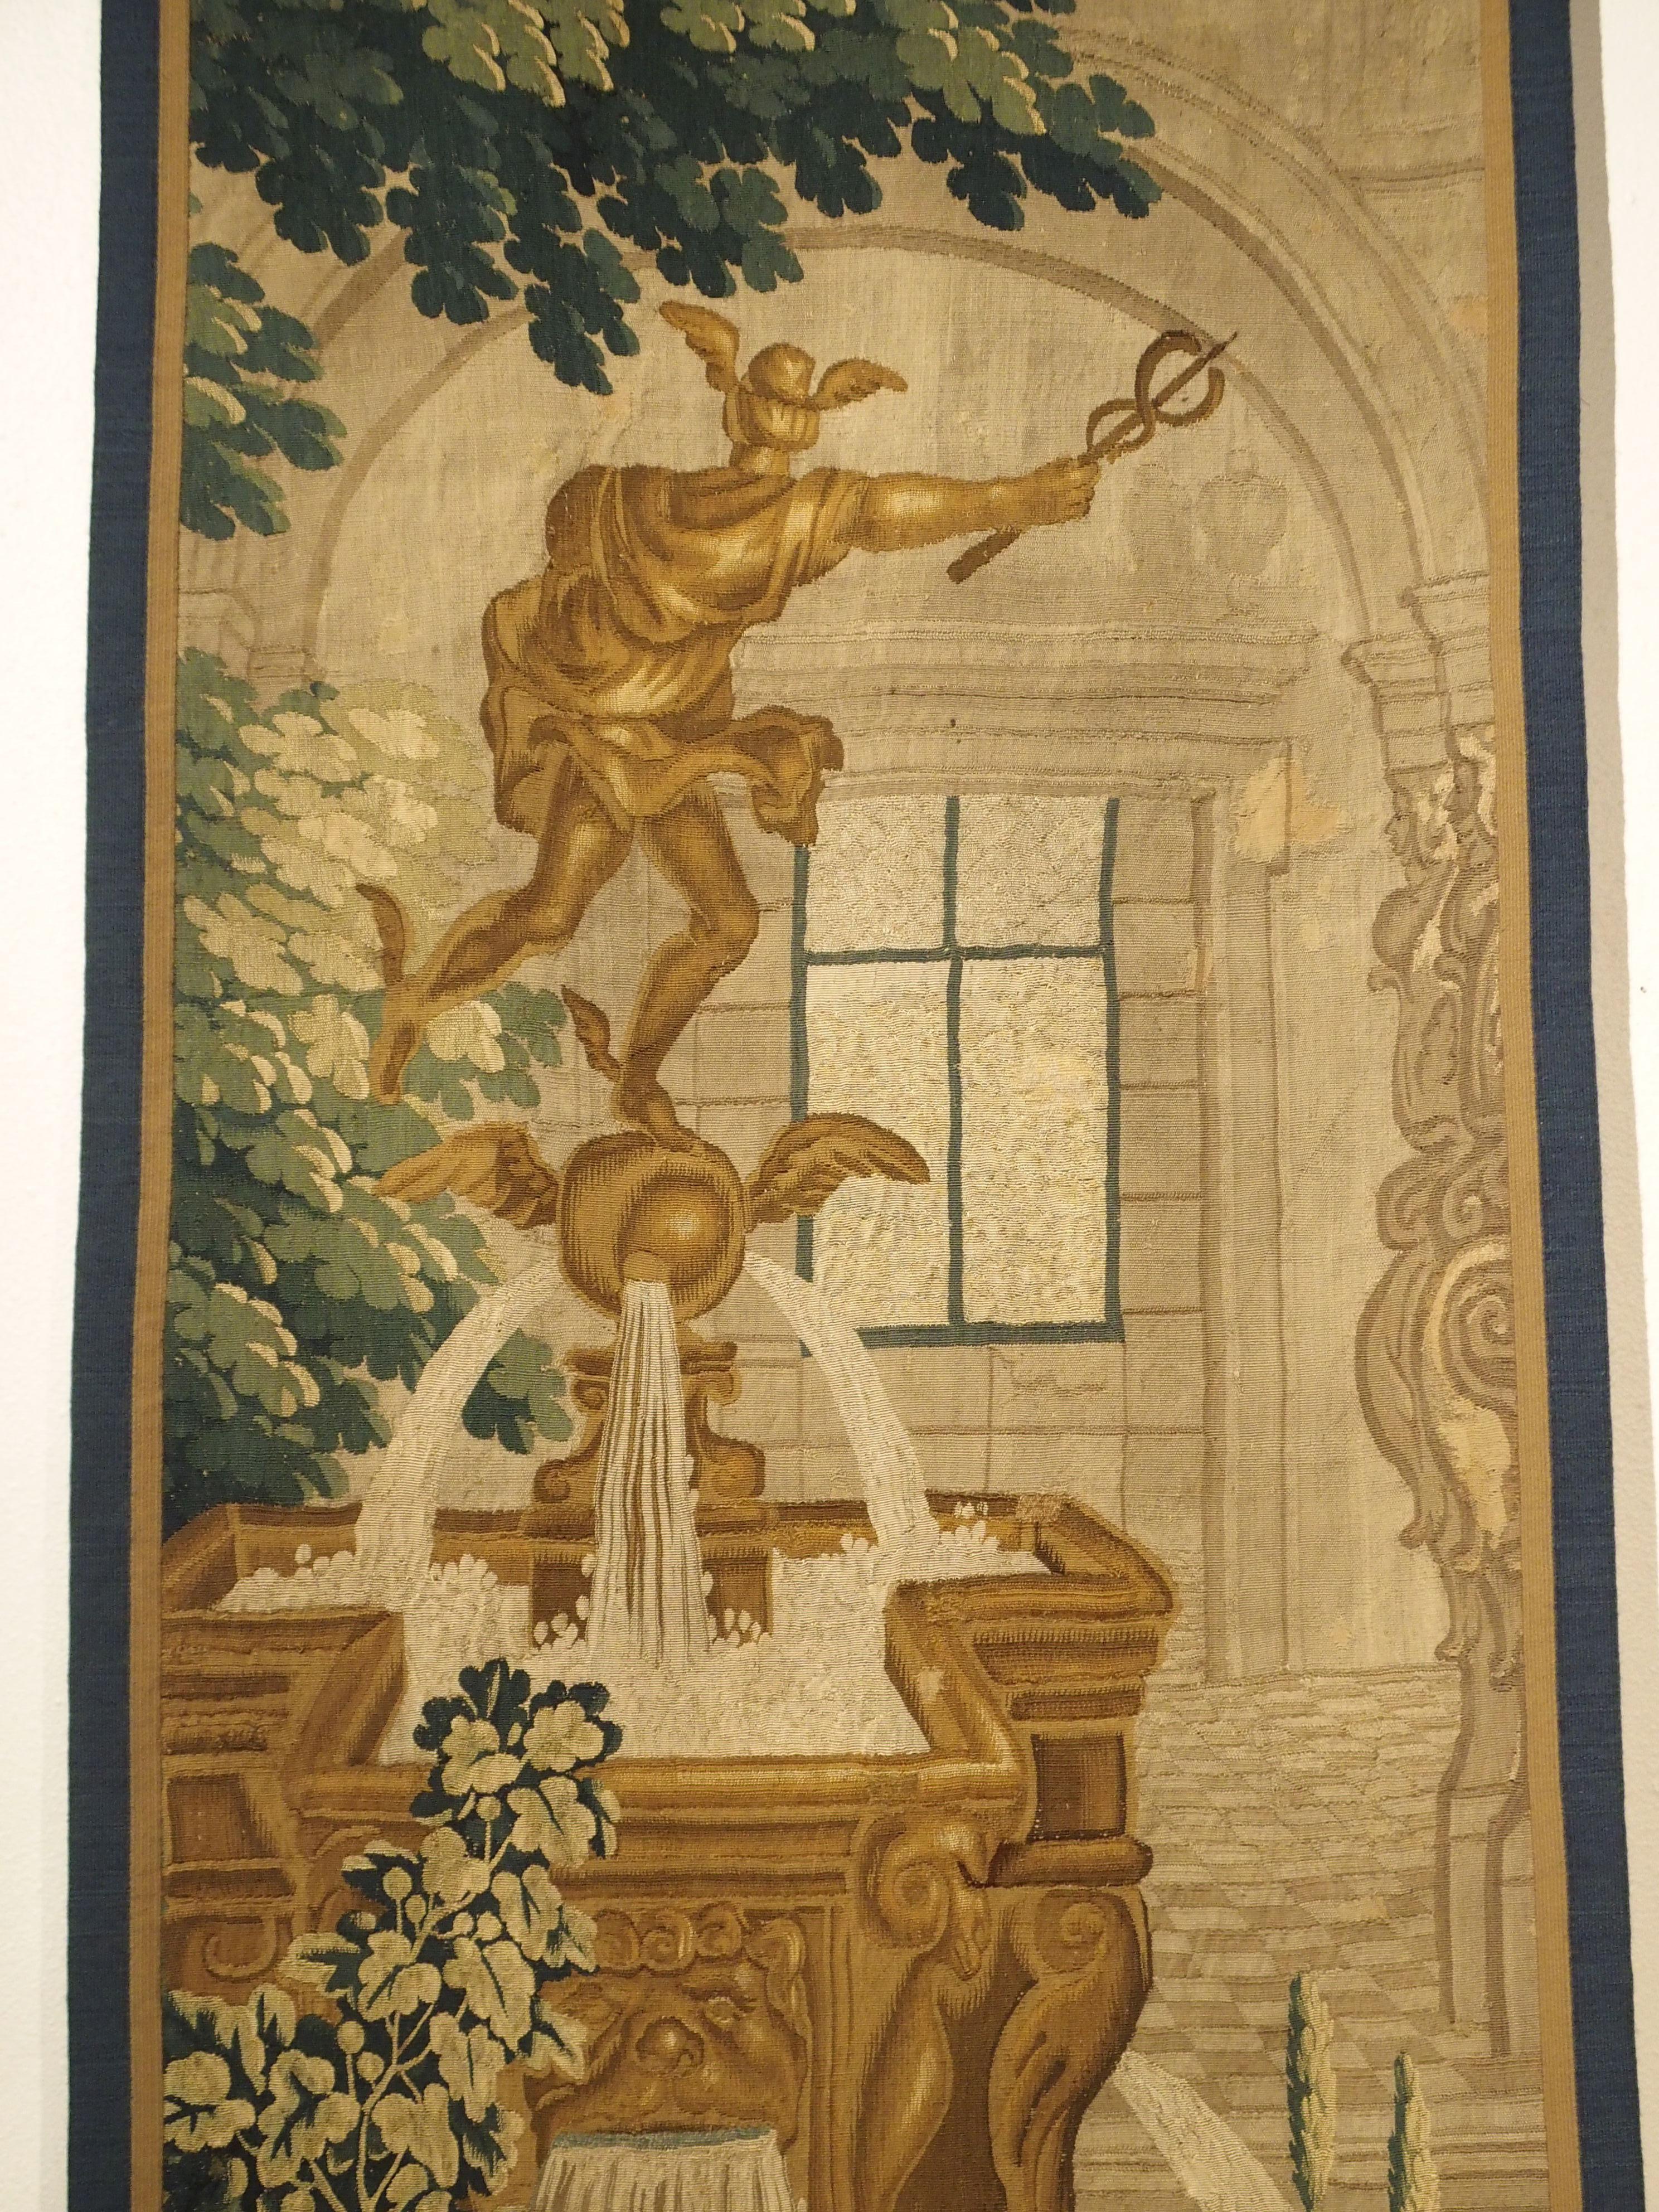 Springbrunnen und Architektur

Dieses schmale Wandteppichfragment aus Seide und Wolle stammt aus der Zeit um 1600 und ist in Brüssel entstanden. Es zeigt eine Statue des griechischen Gottes Hermes (bei den Römern Merkur), der der Bote der Götter